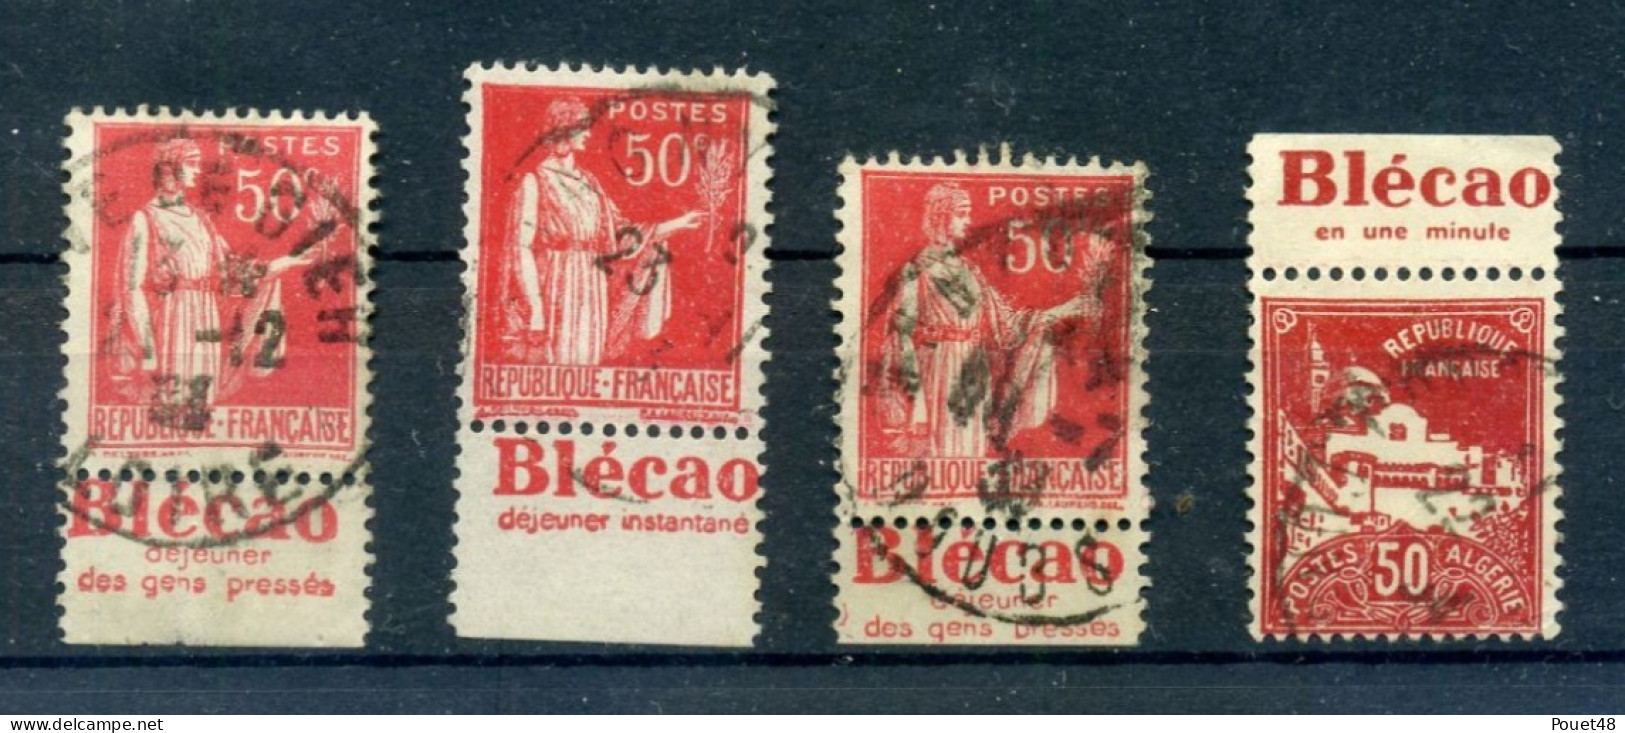 Publicité - Blécao: 3 X Le N° 283 + Algérie Mosquée - Used Stamps